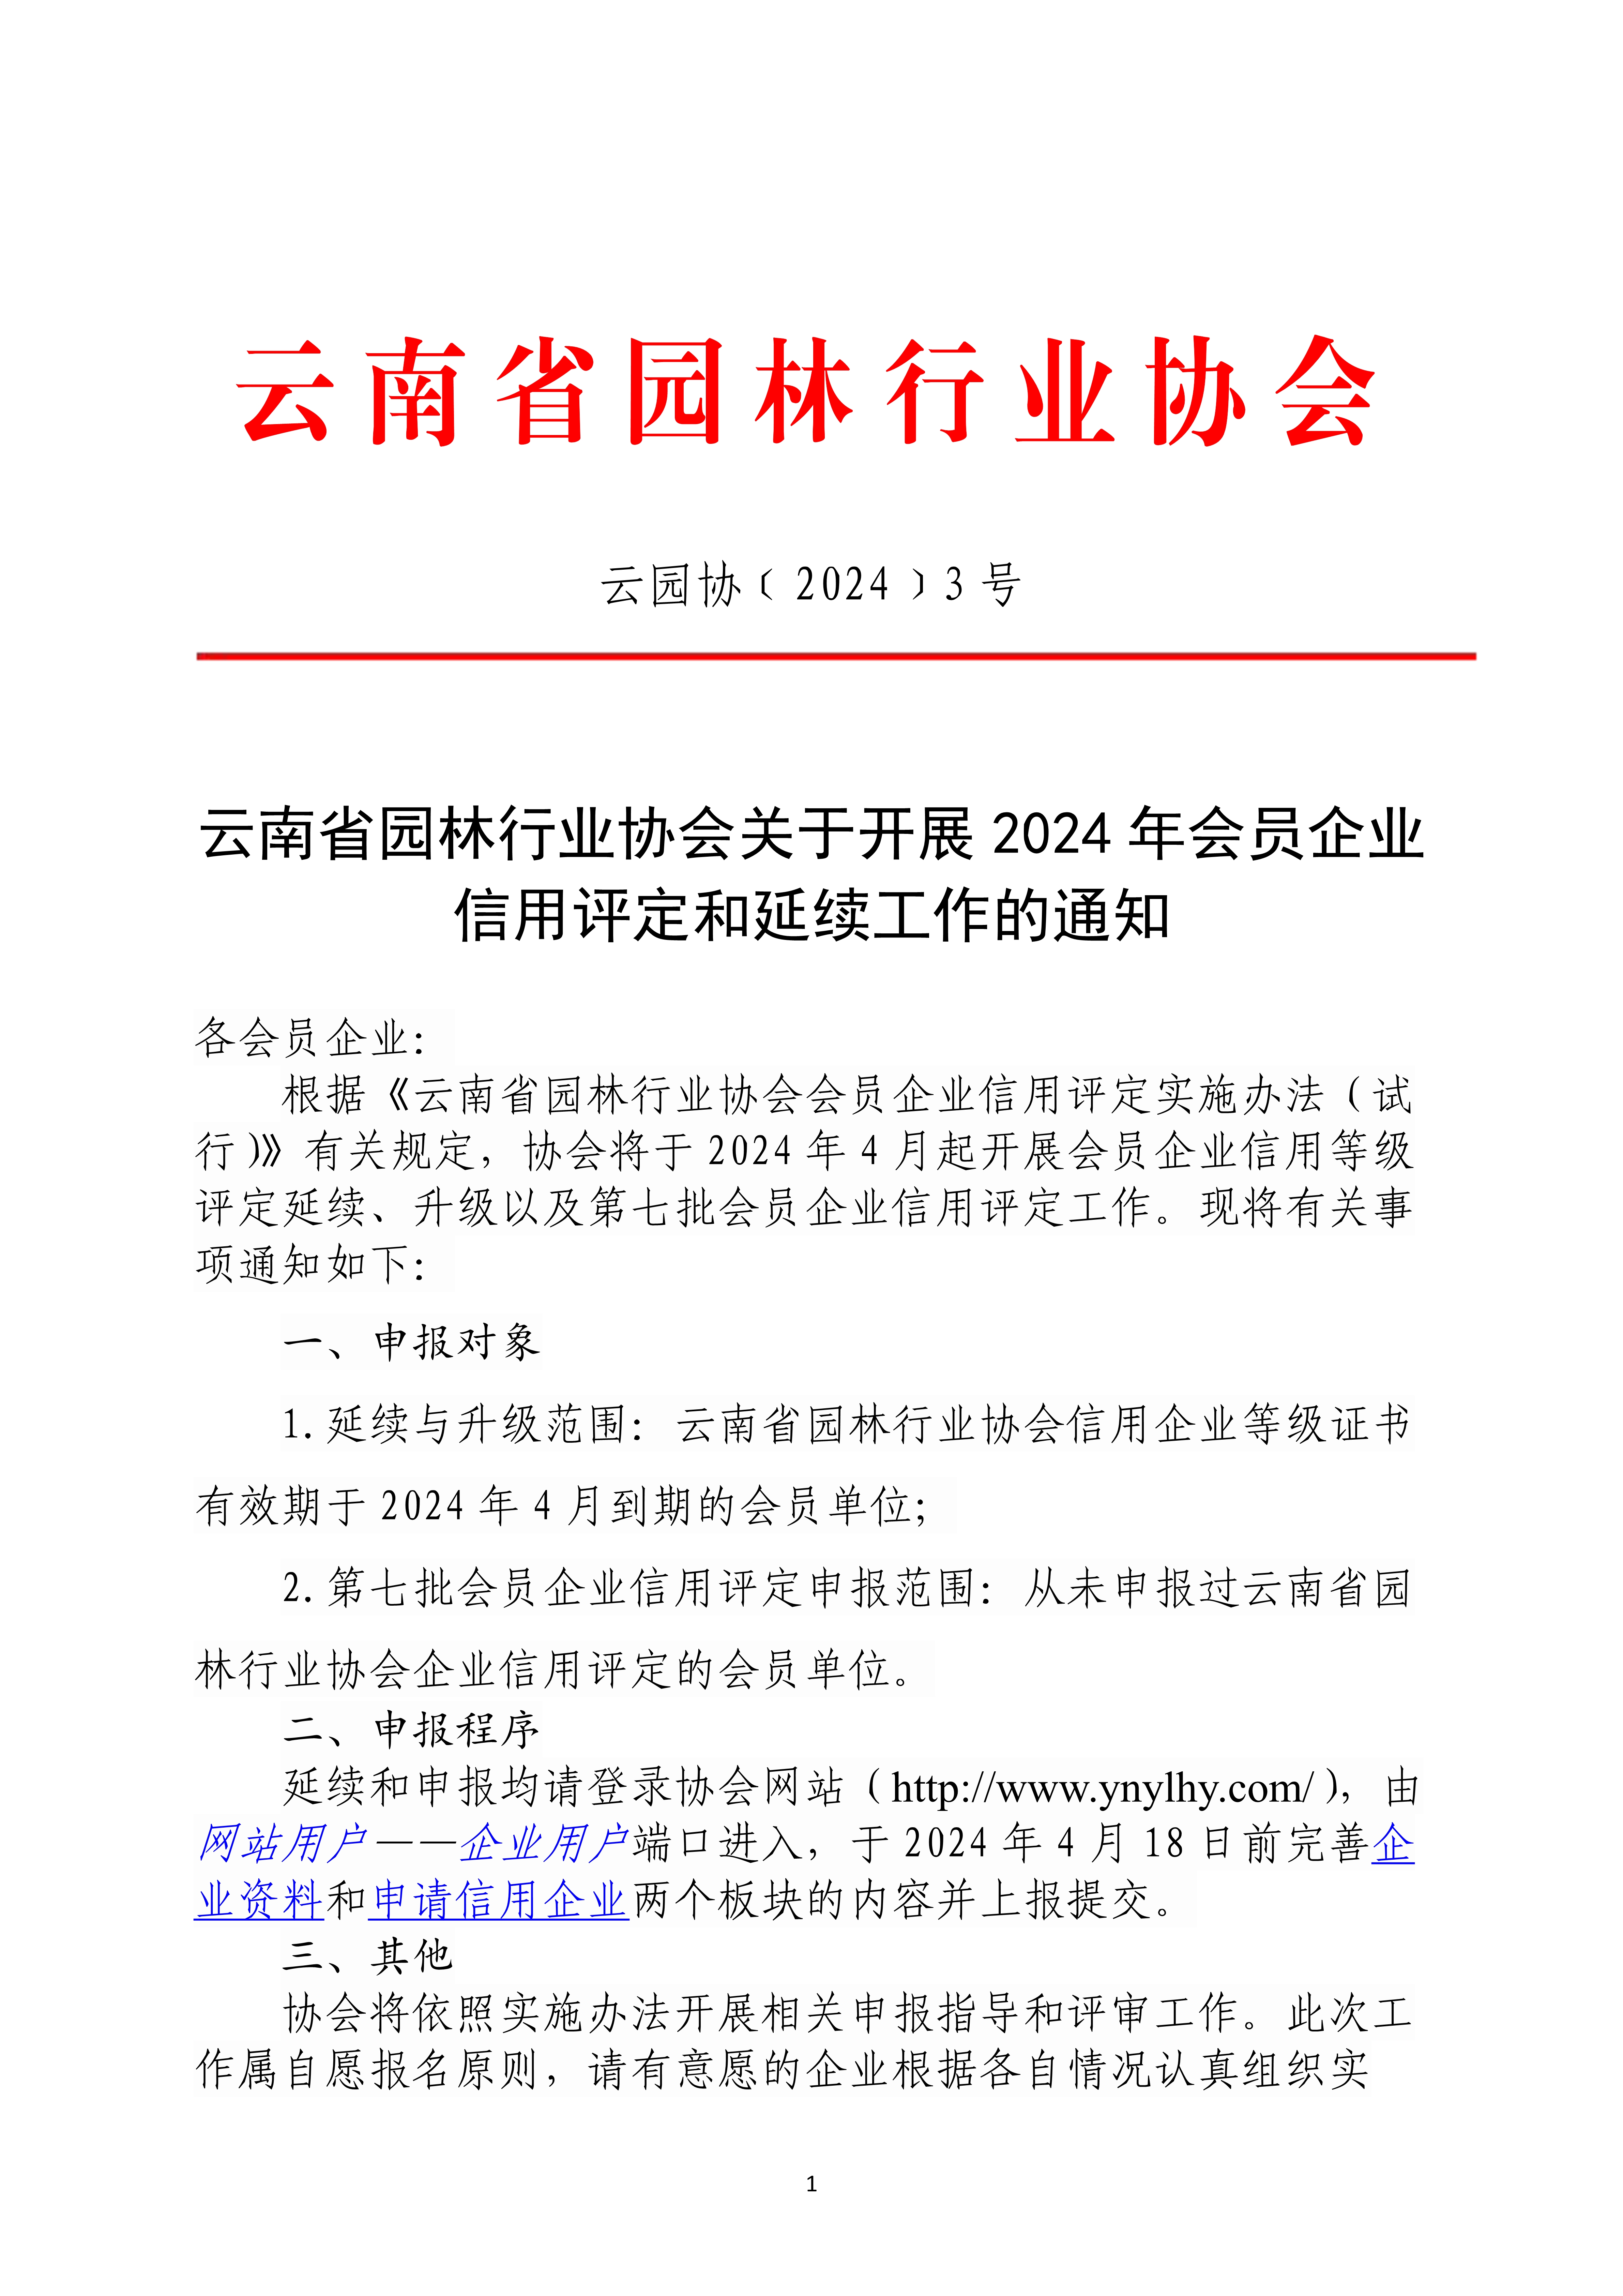 云南省园林行业协会关于开展2024年会员企业信用评定和延续工作的通知_1.jpg